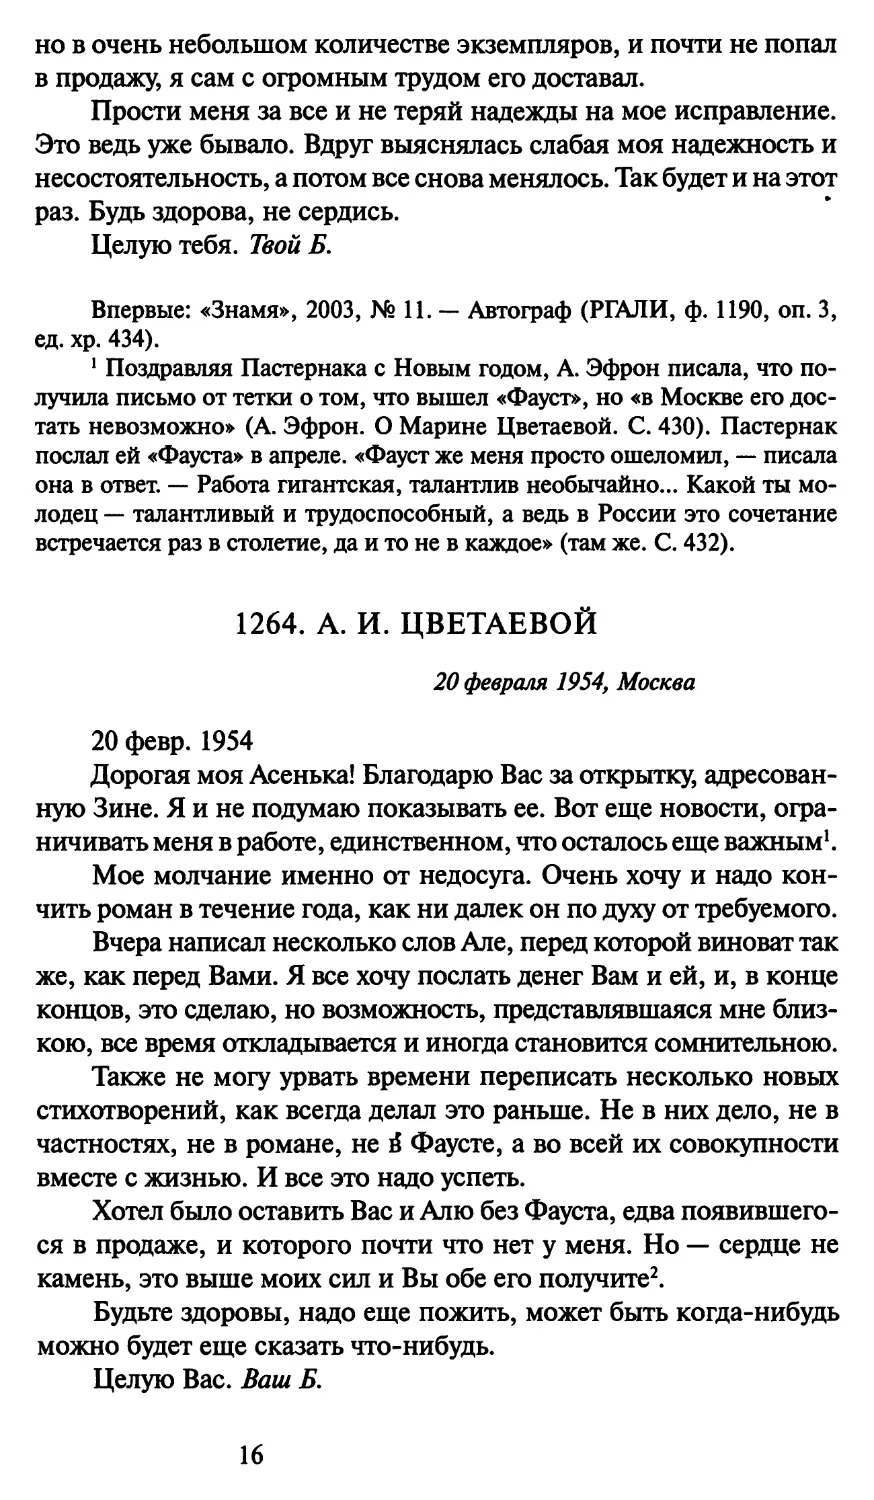 1264. А. И. Цветаевой 20 февраля 1954